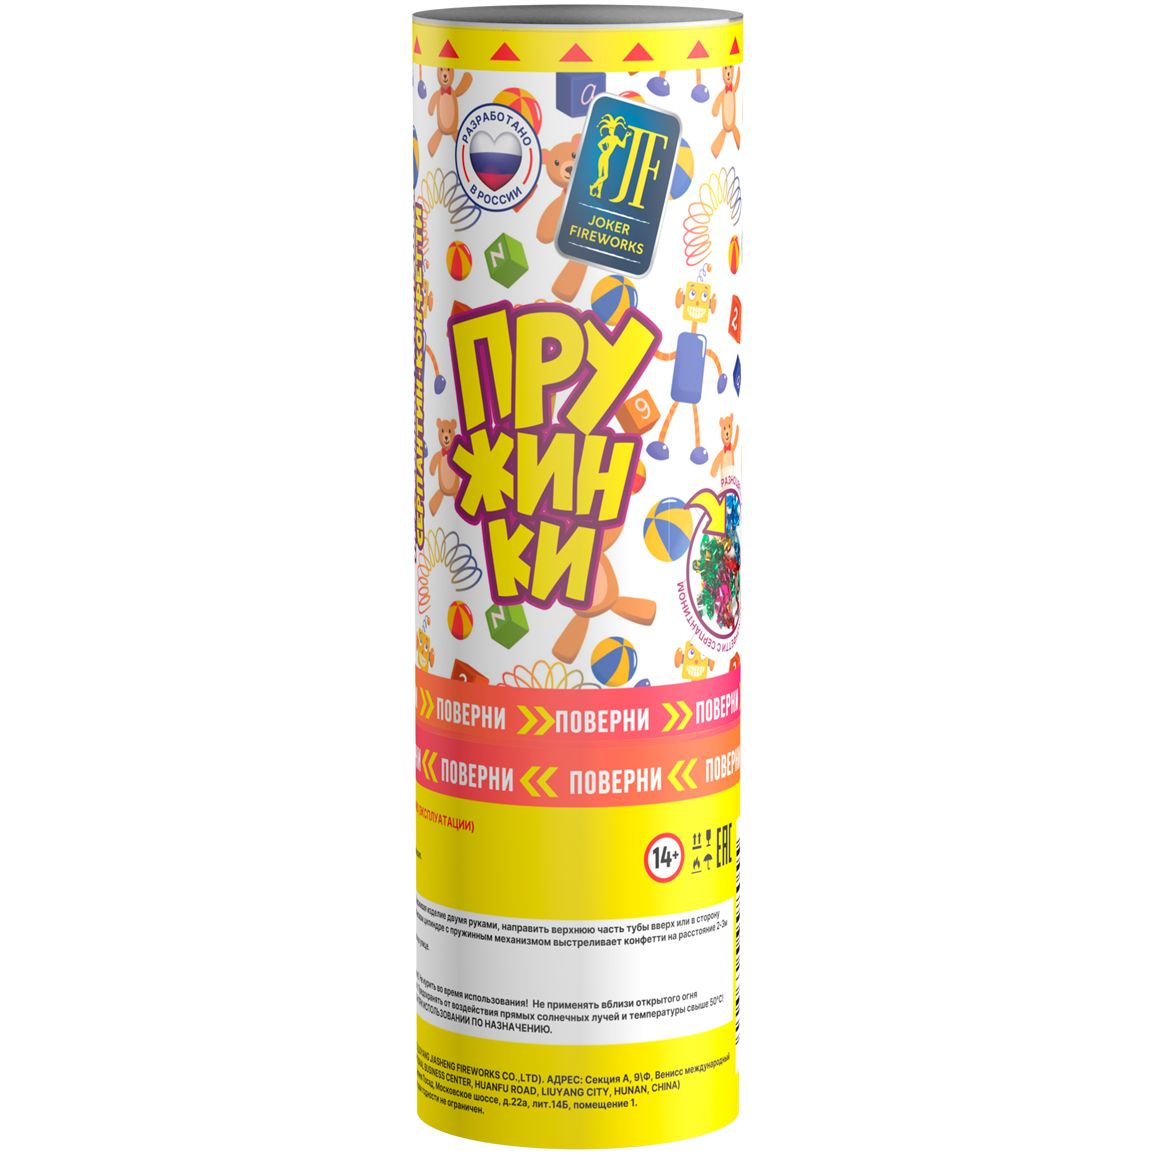 Хлопушка пружинная JF H110-40SF/01 "Пружинки" (разноцветное конфетти и серпантин, фольга) 11см